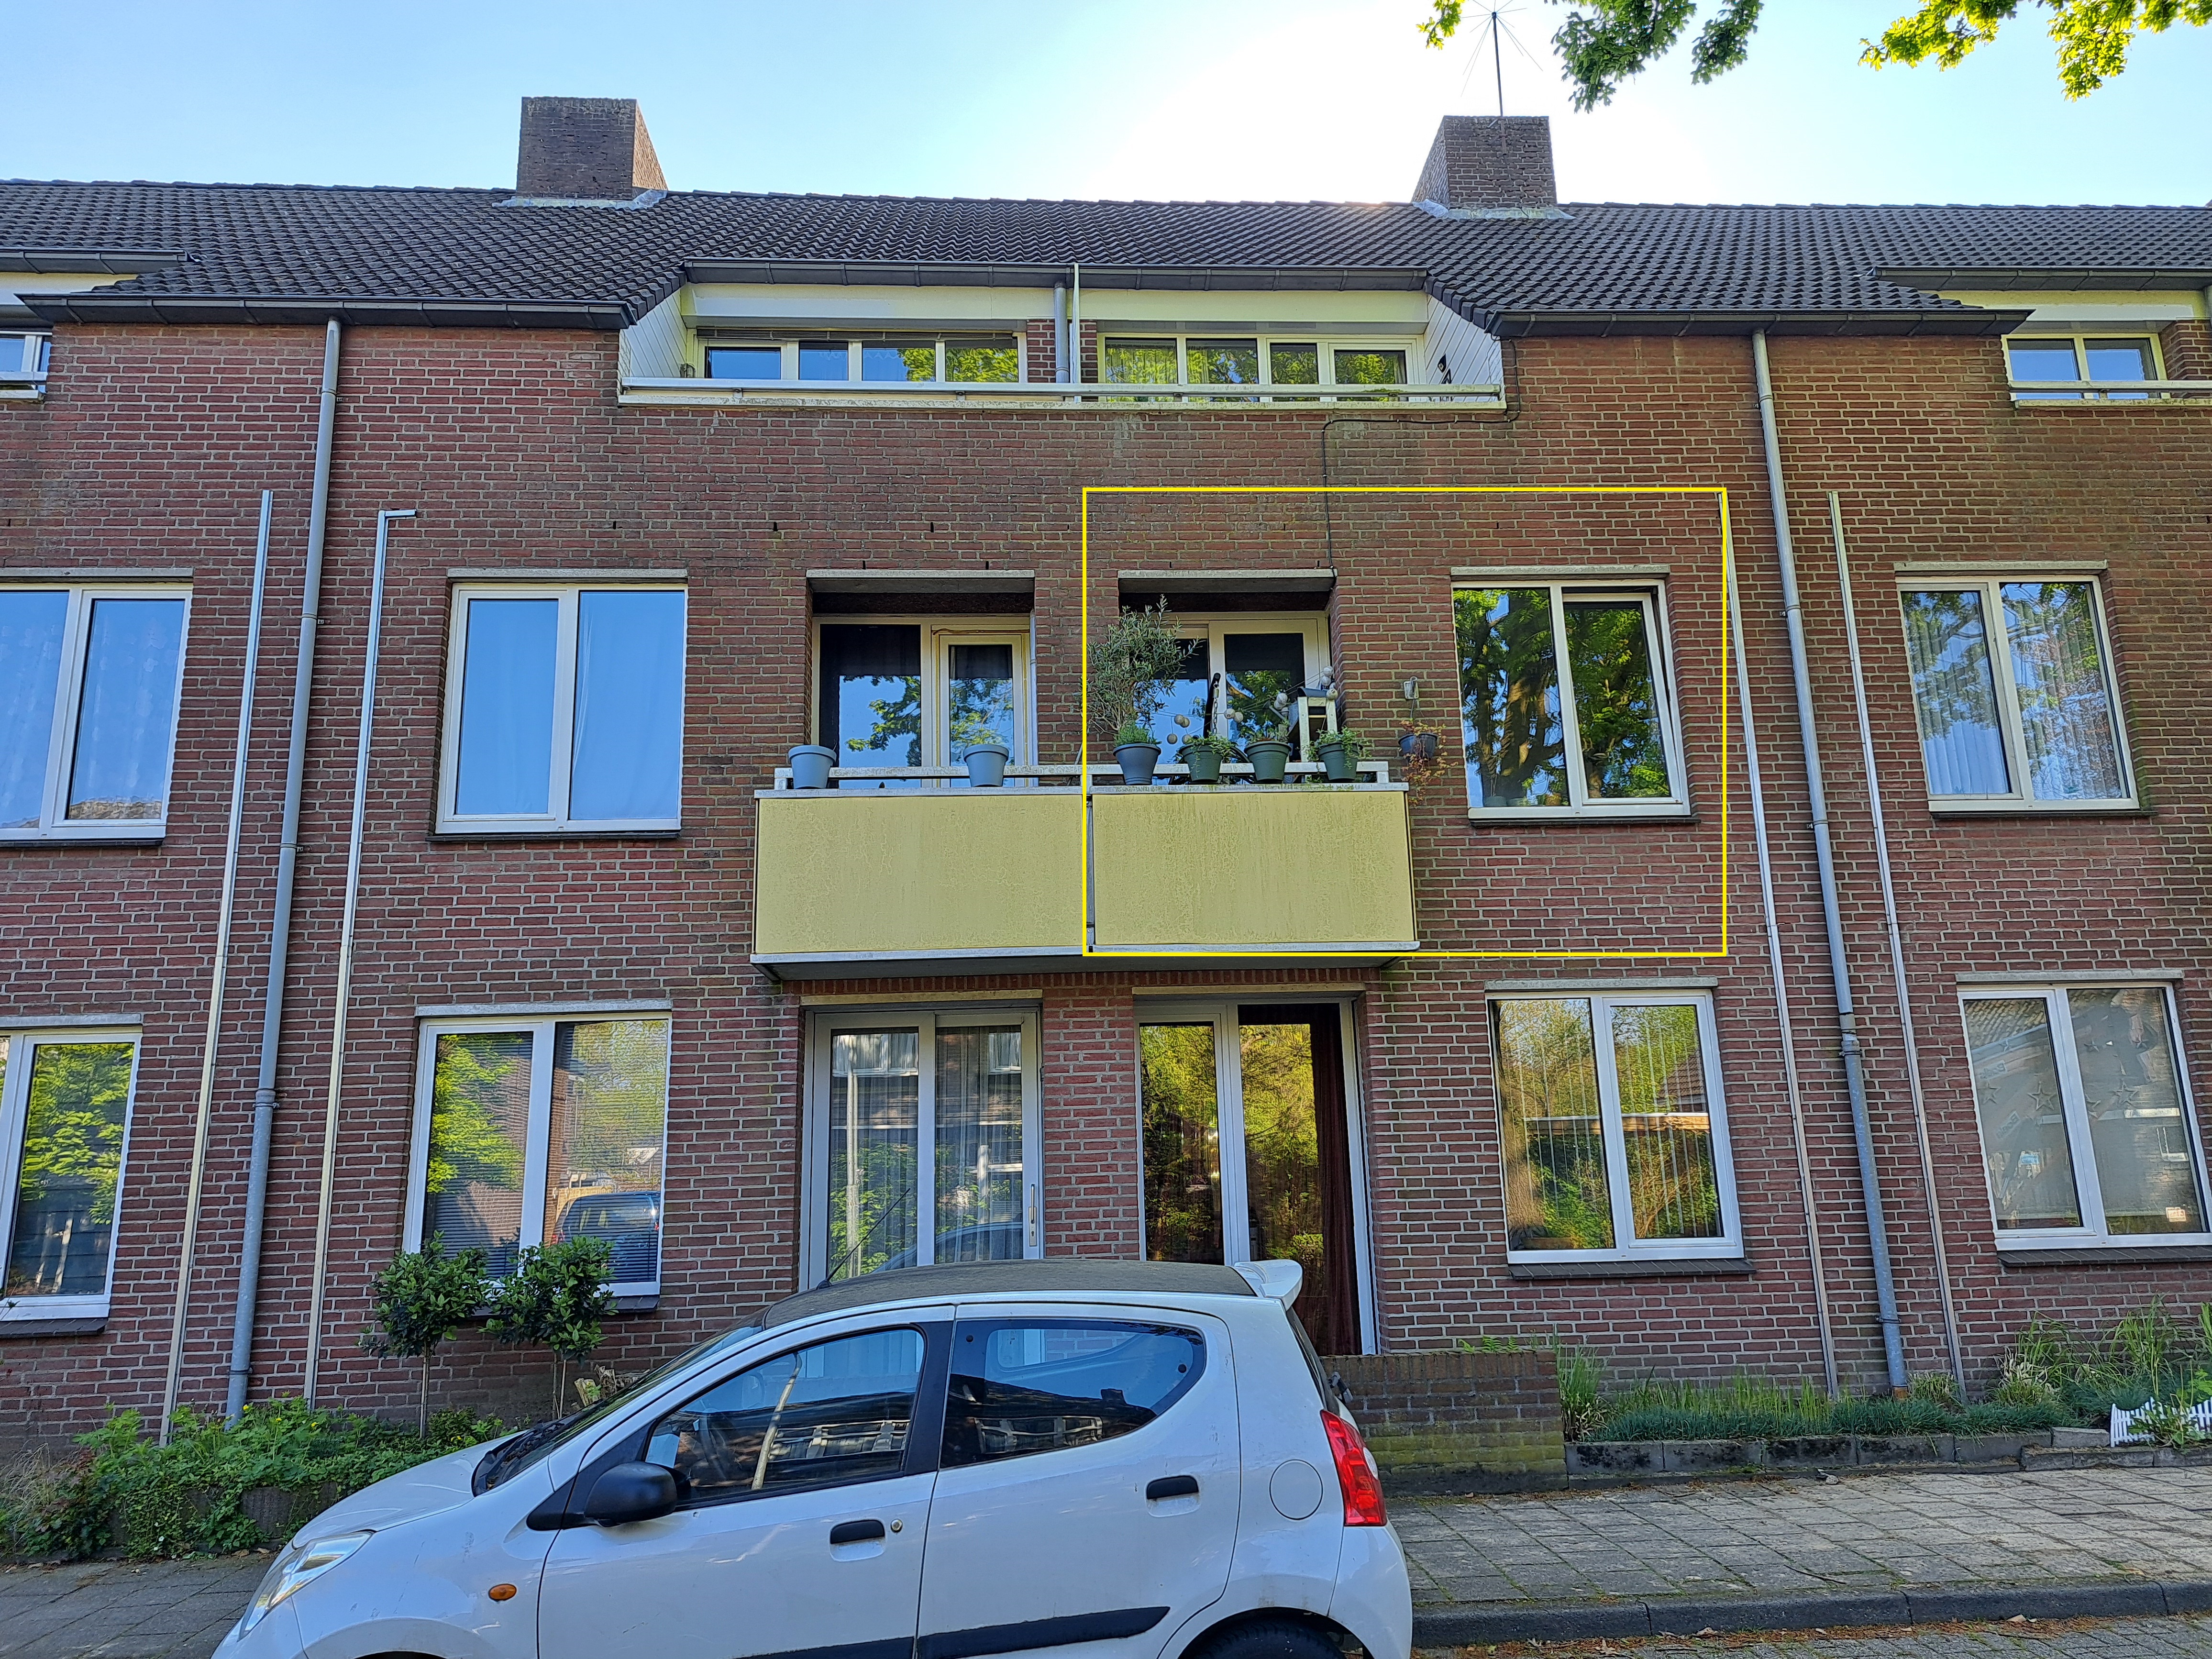 Pastoor van Vroonhovenstraat 28, 5554 HS Valkenswaard, Nederland